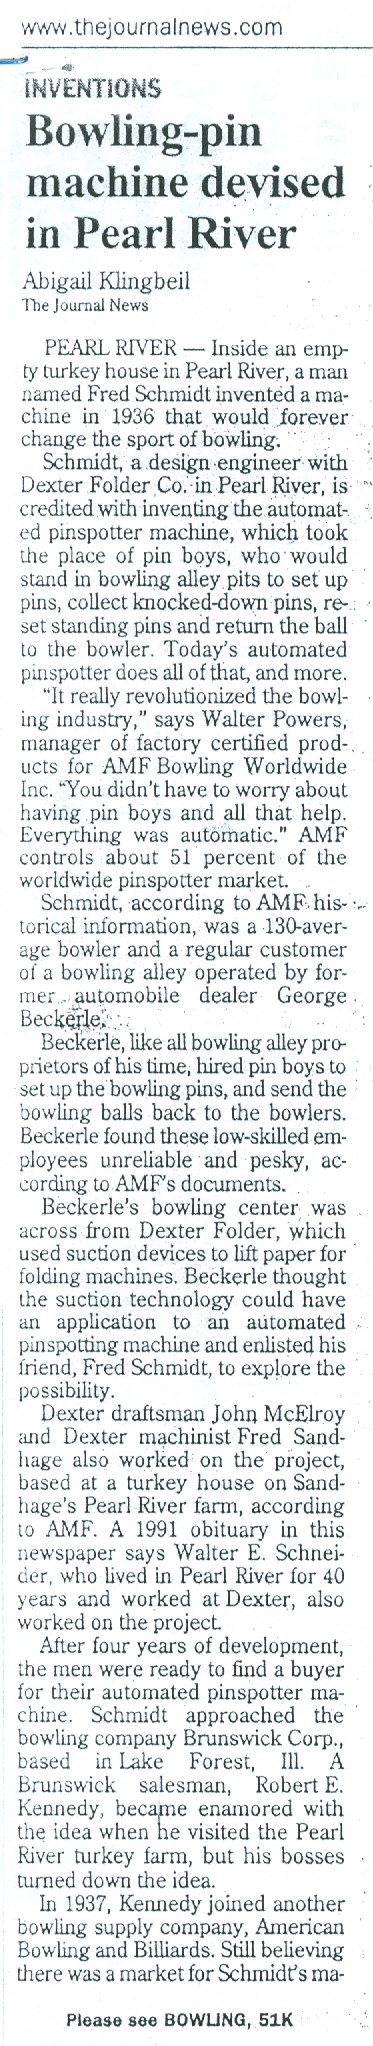 George Beckerle Bowling machine